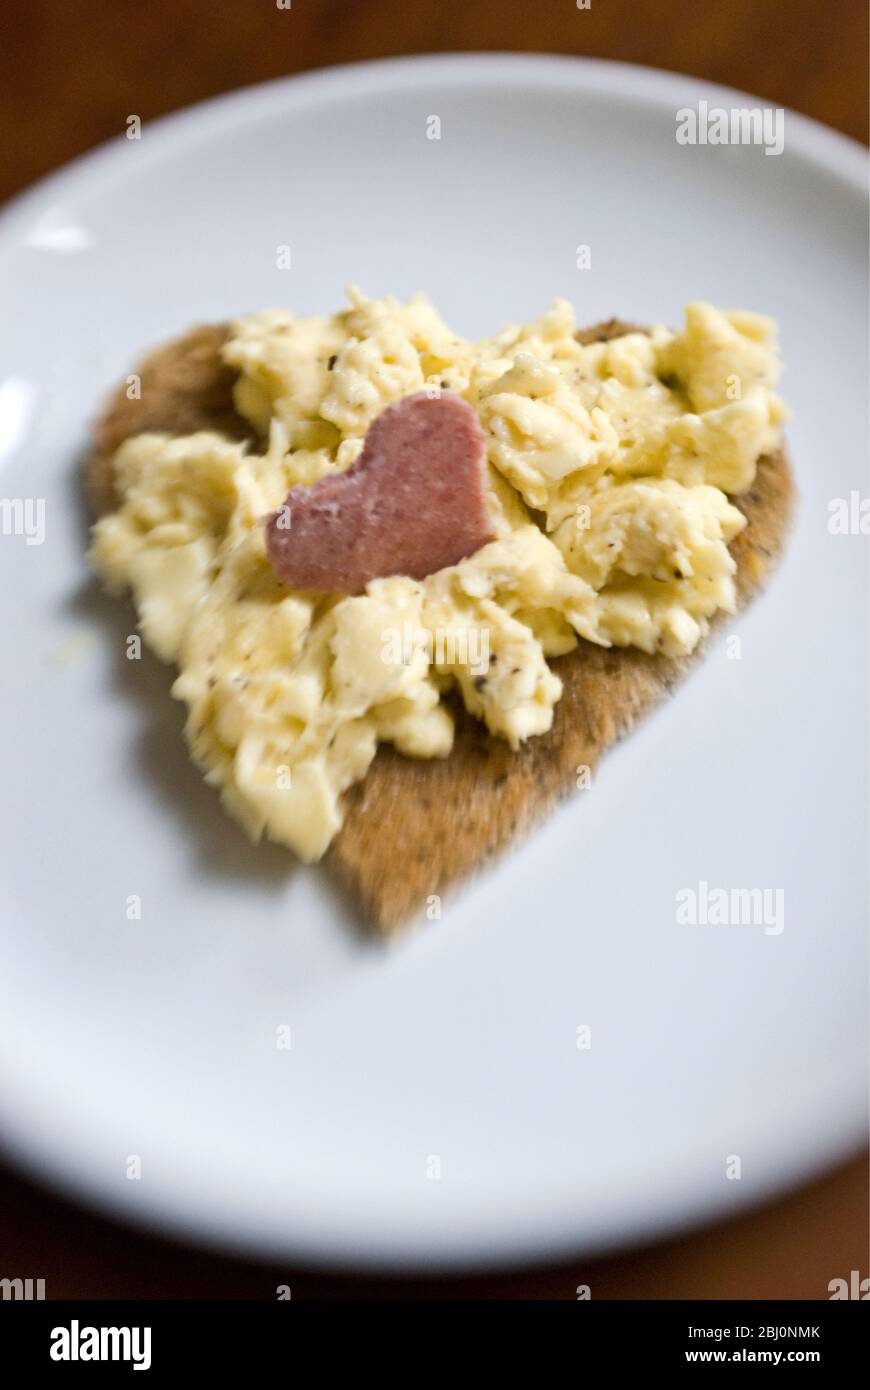 Saint-Valentin petit déjeuner d'œufs brouillés sur pain grillé en forme de coeur avec tranche de salami coupée en forme de coeur - Banque D'Images